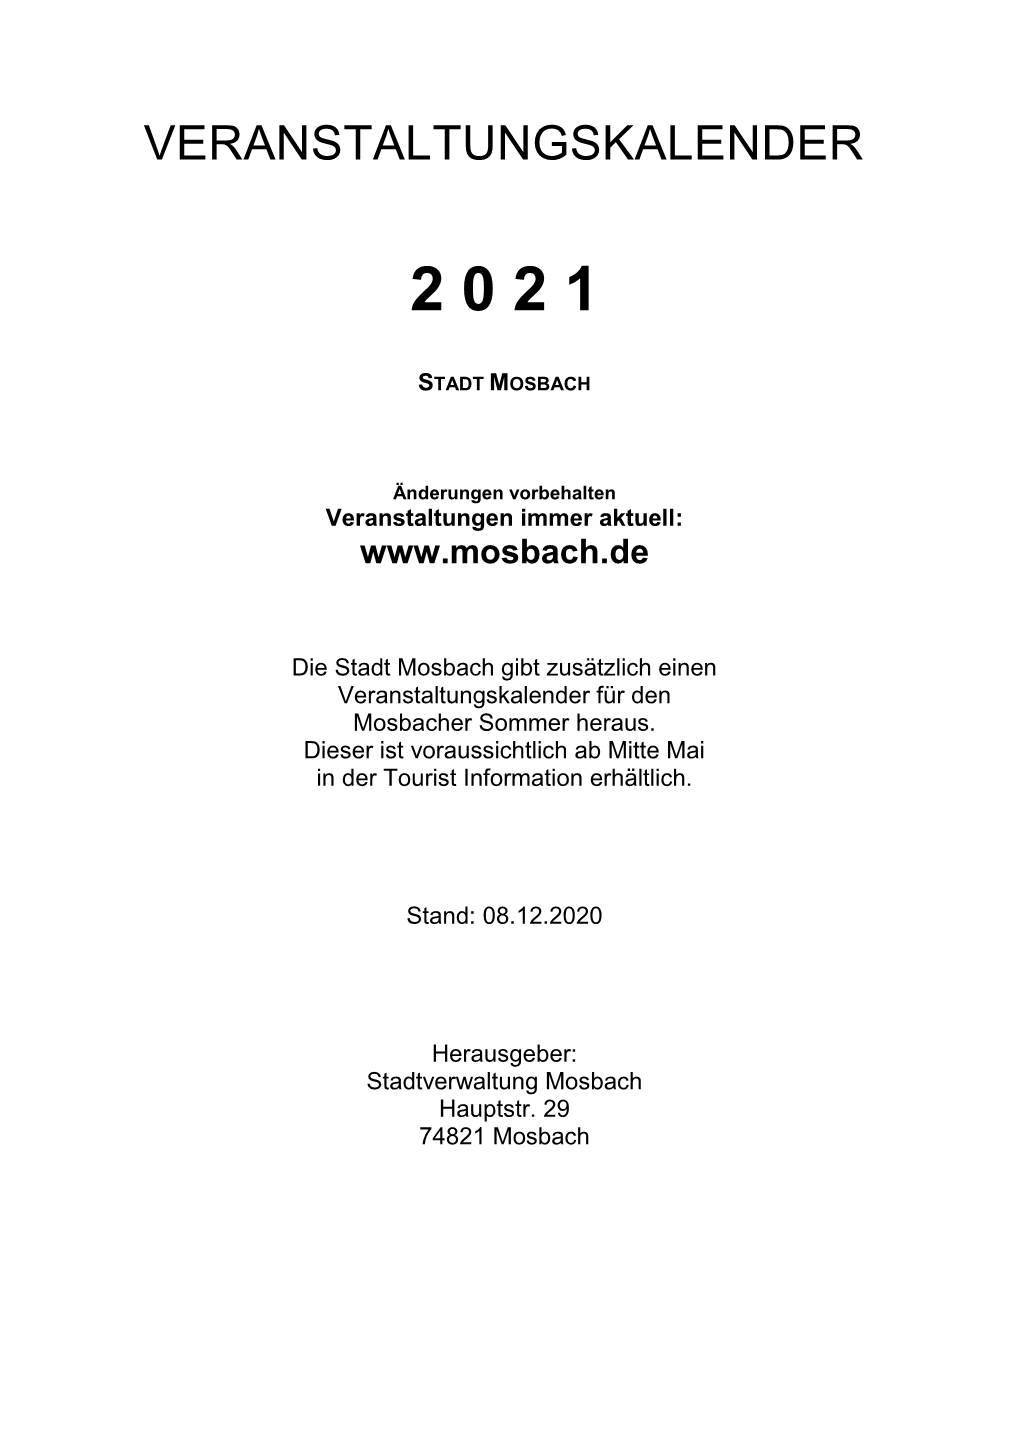 Veranstaltungskalender 2021 Für Die Stadt Mosbach Zum Download